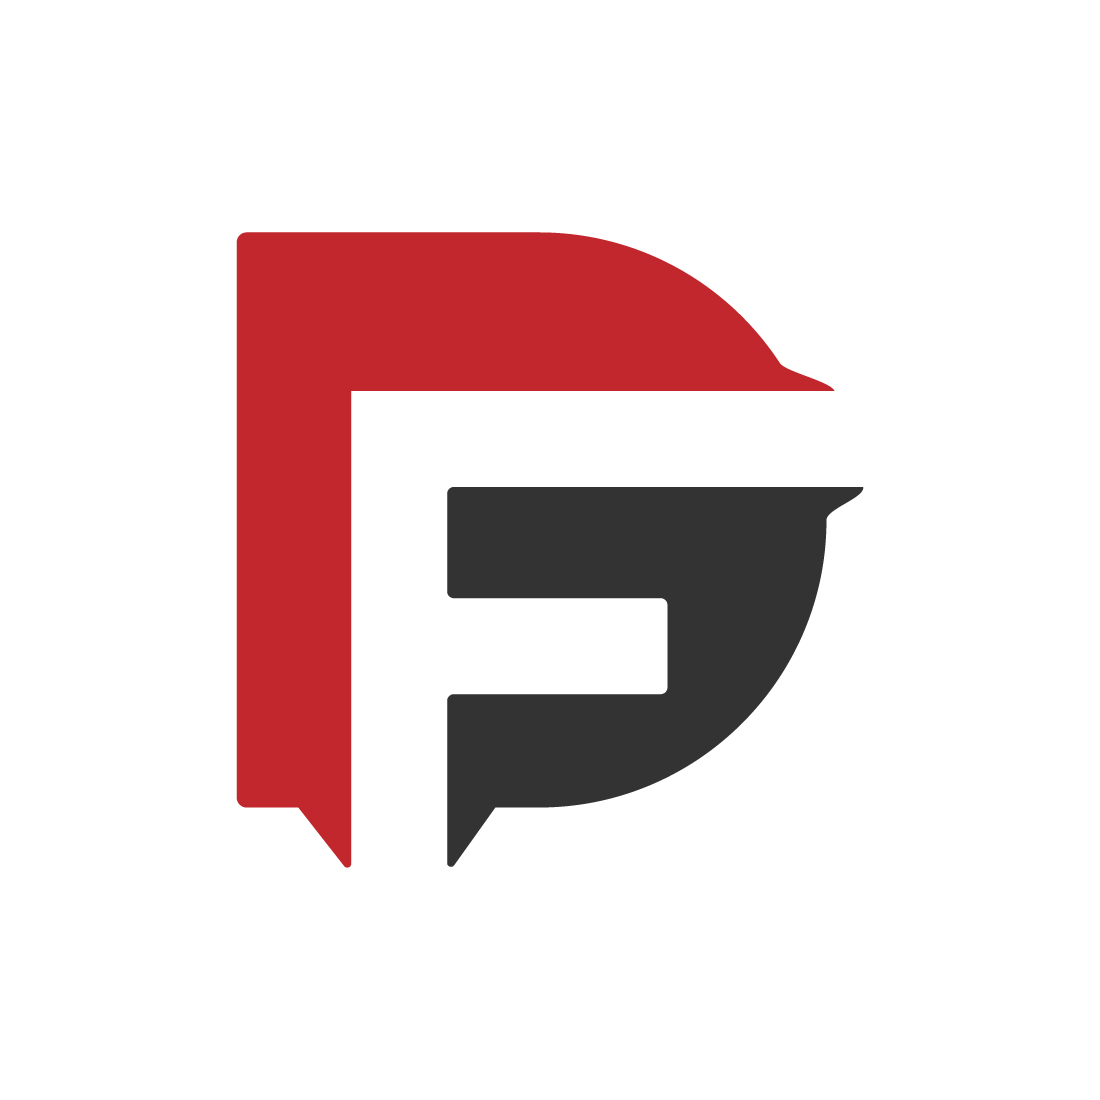 DF logo Design preview image.